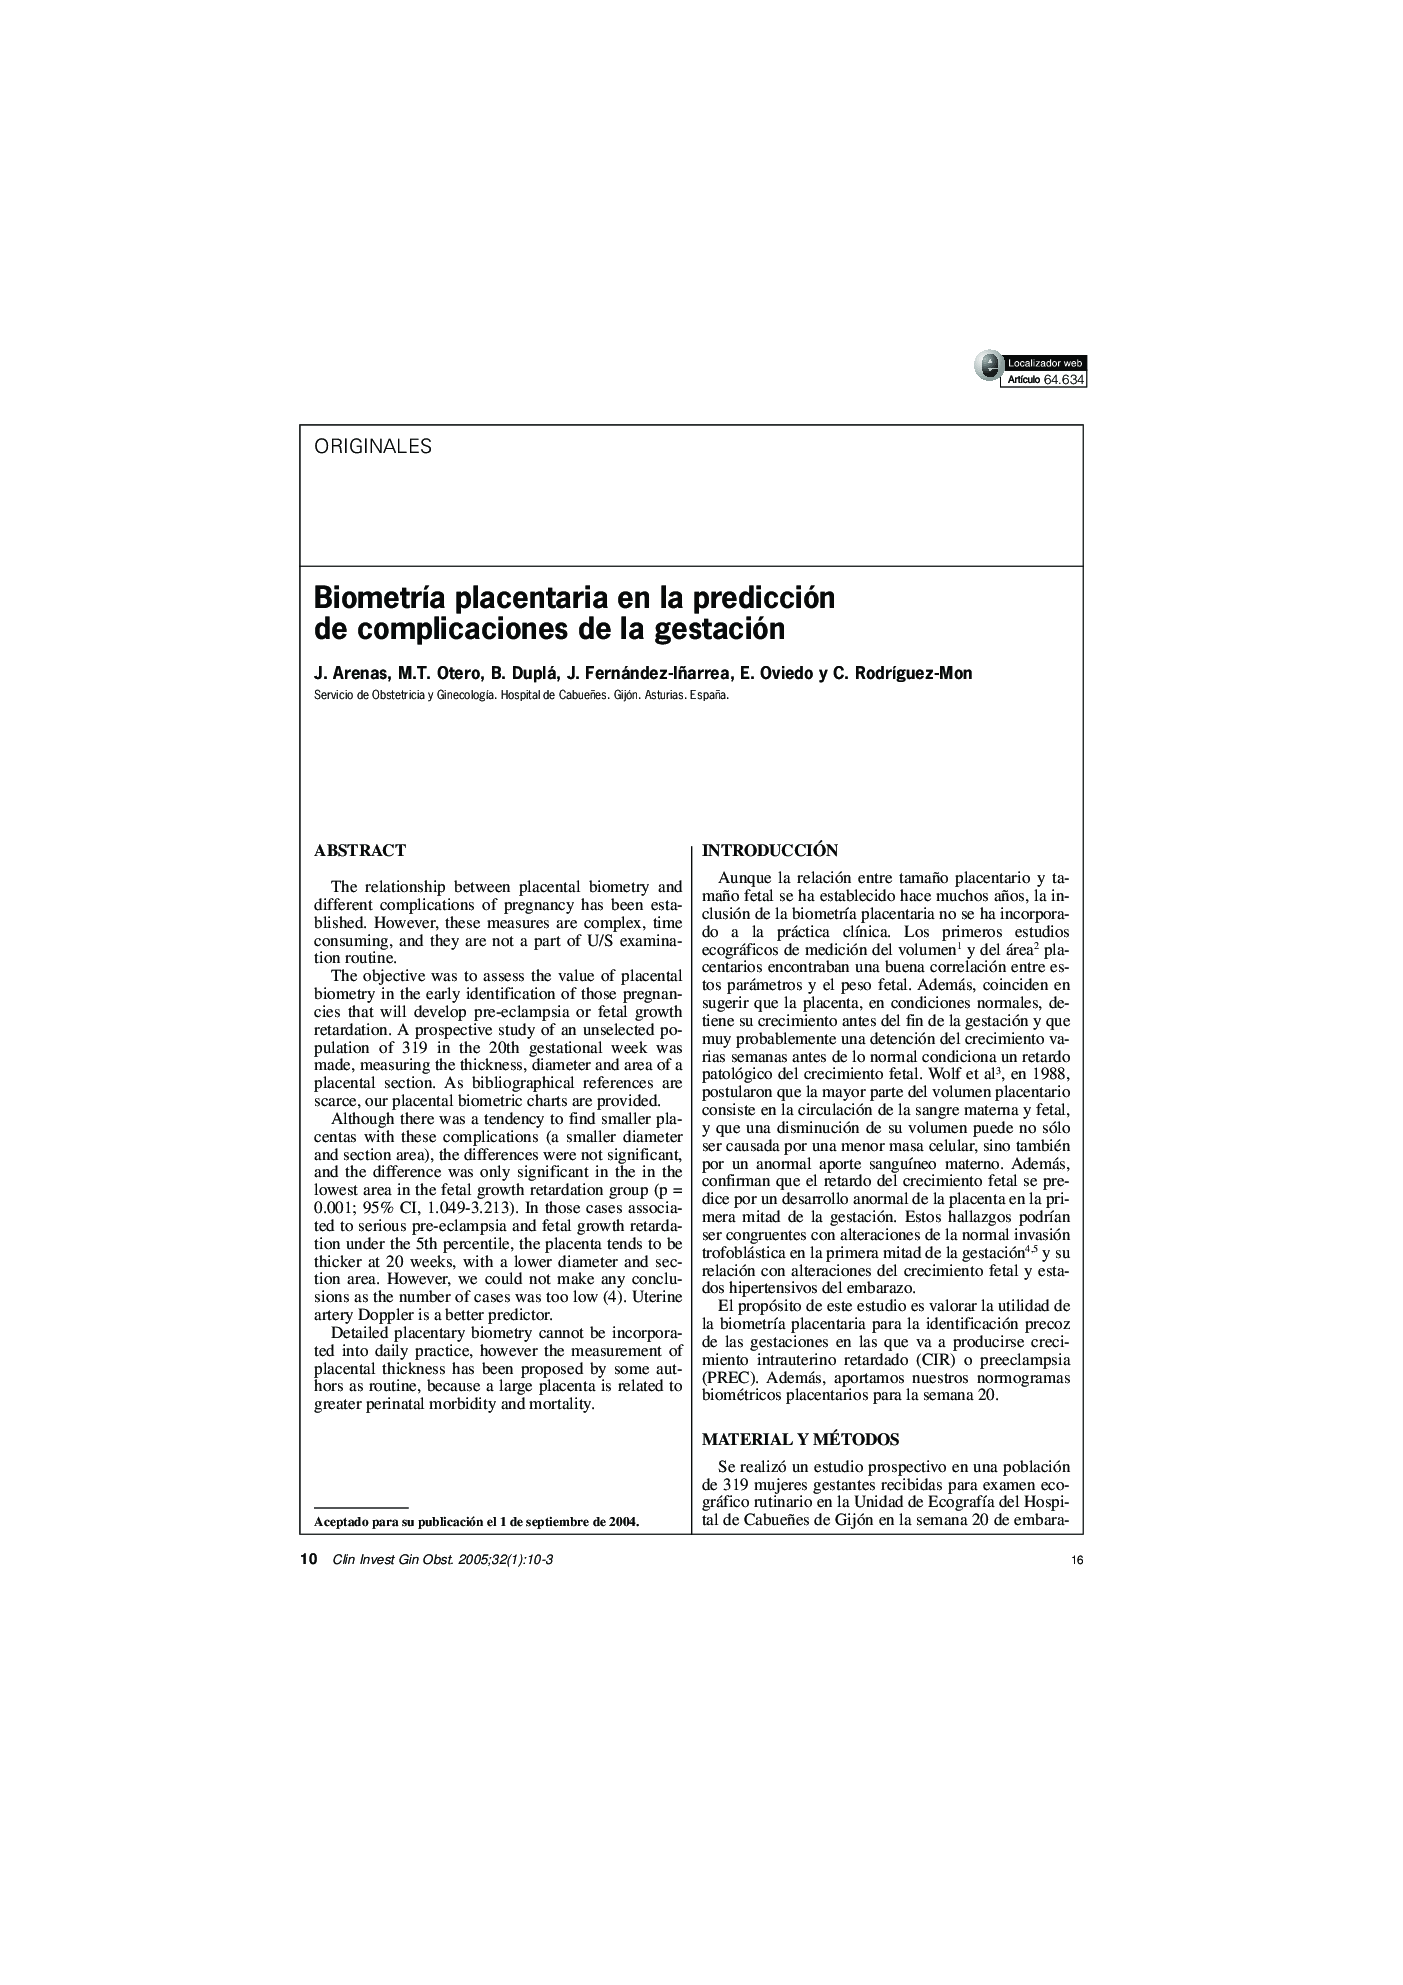 BiometrÃ­a placentaria en la predicción de complicaciones de la gestación